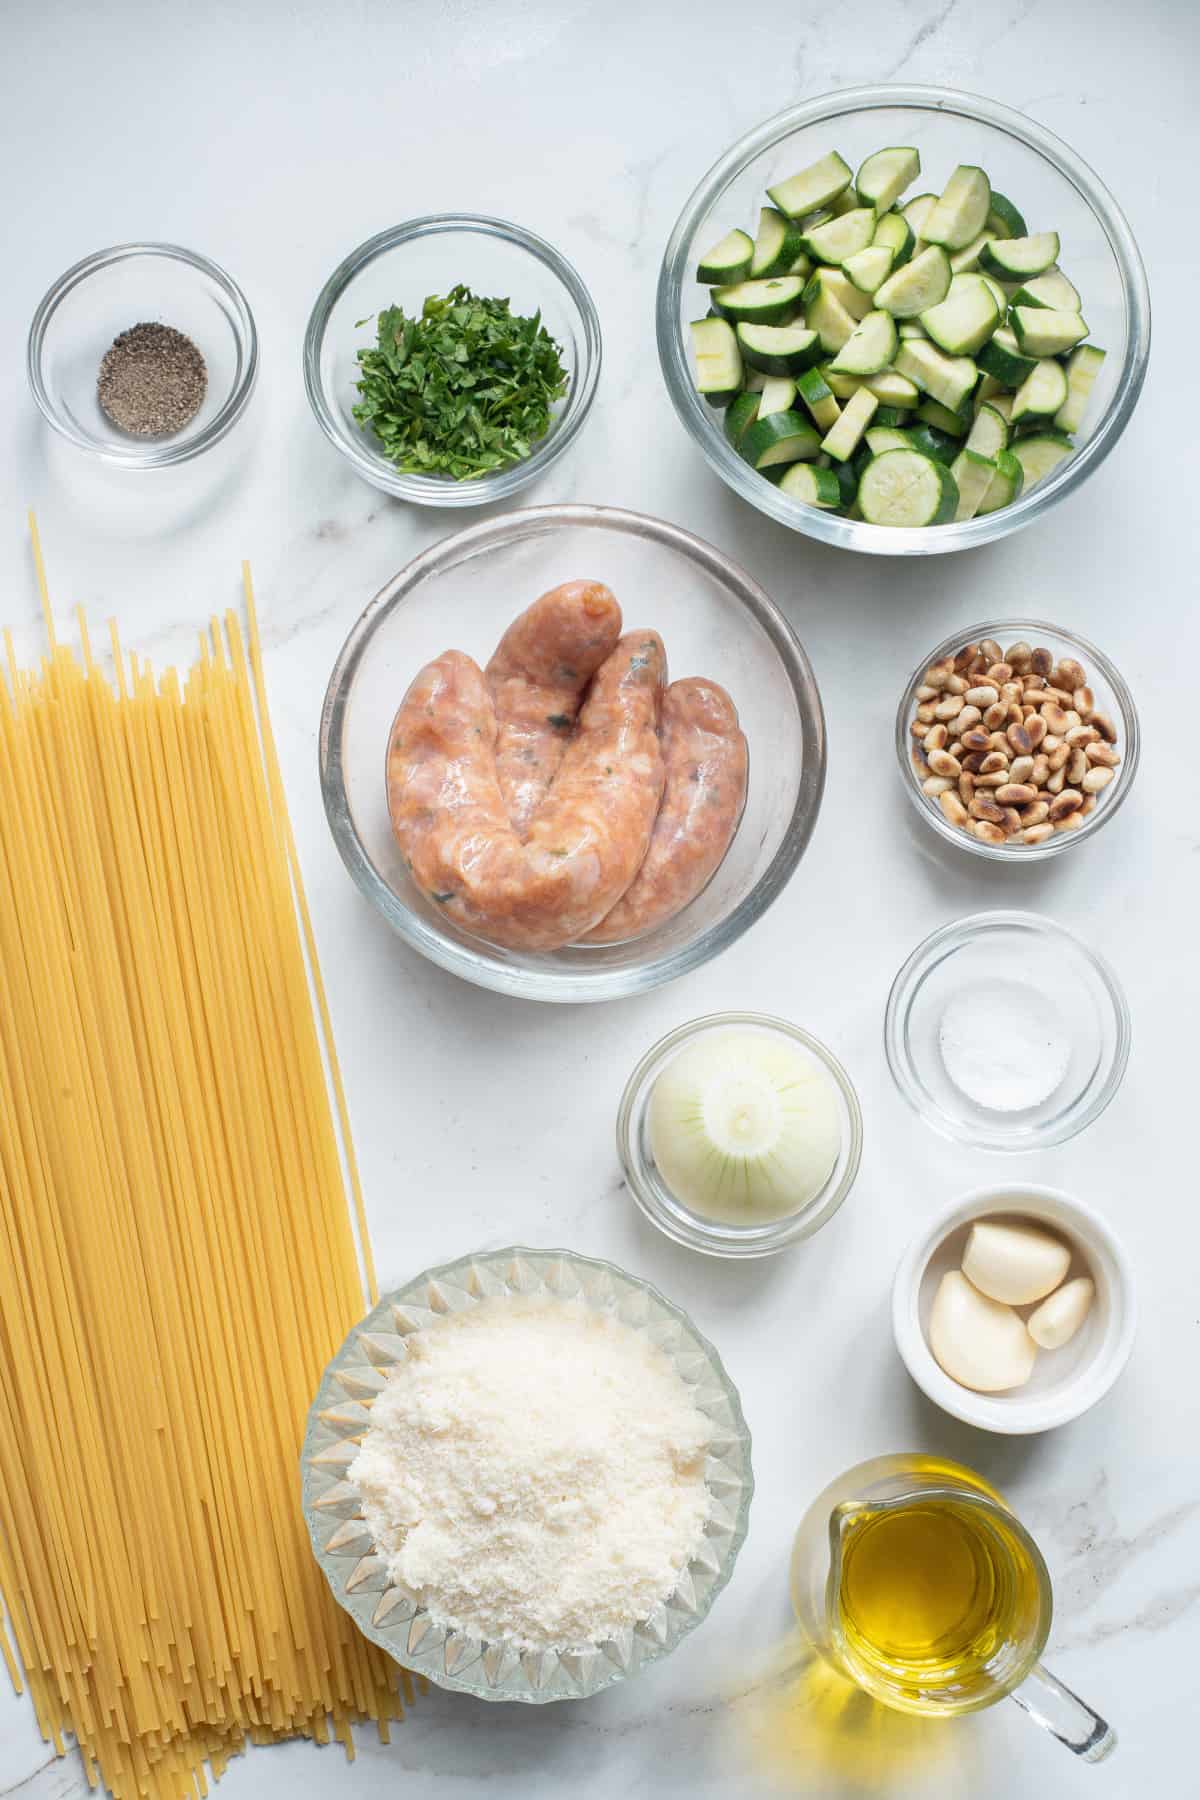 Ingredients for Chicken Sausage Pasta. 